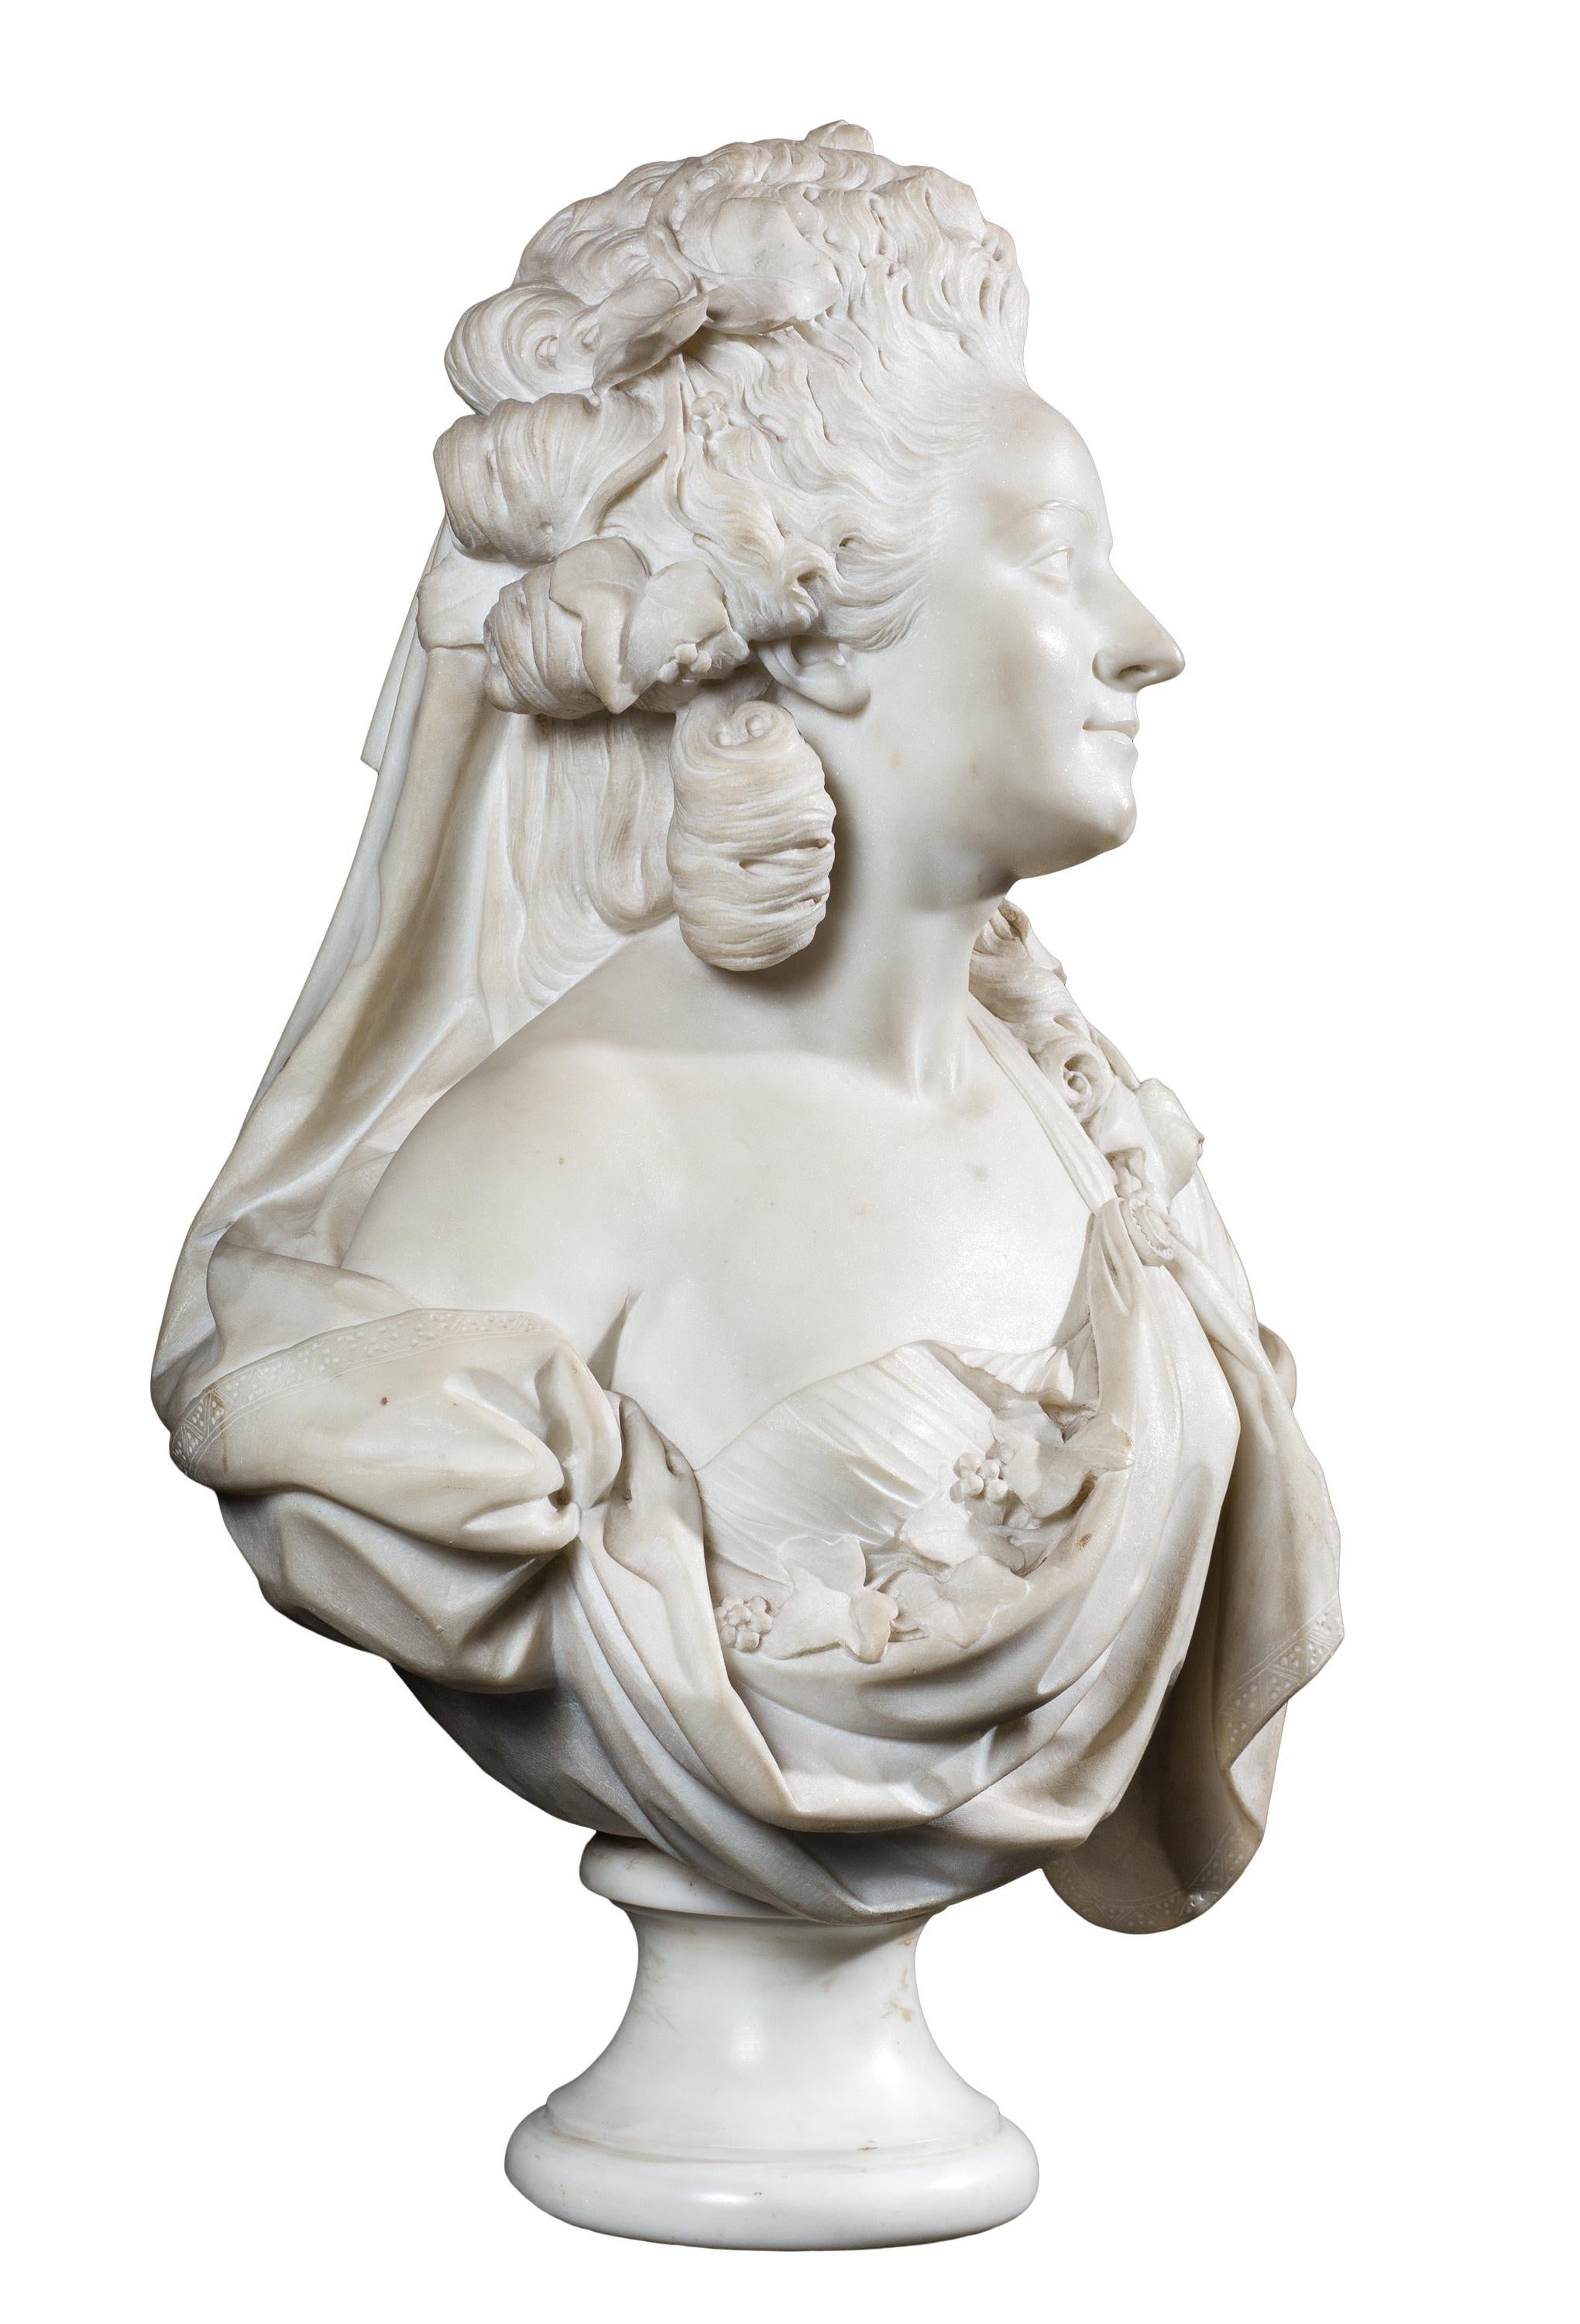 18th century sculpture